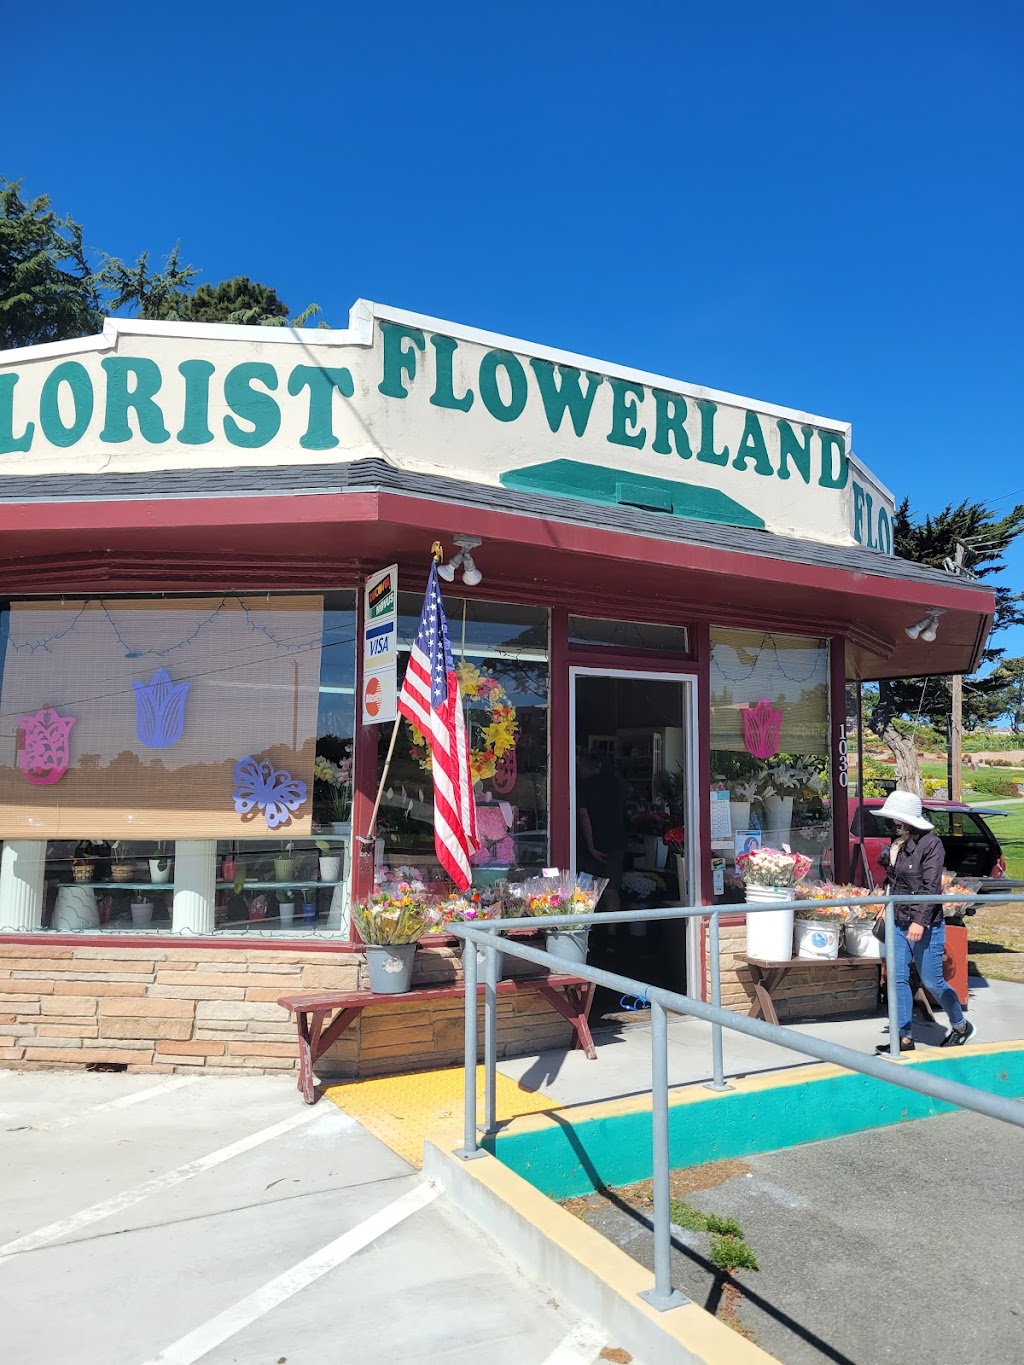 Flowerland Floral Shop | 1030 El Camino Real, Colma, CA 94014 | Phone: (650) 755-1055